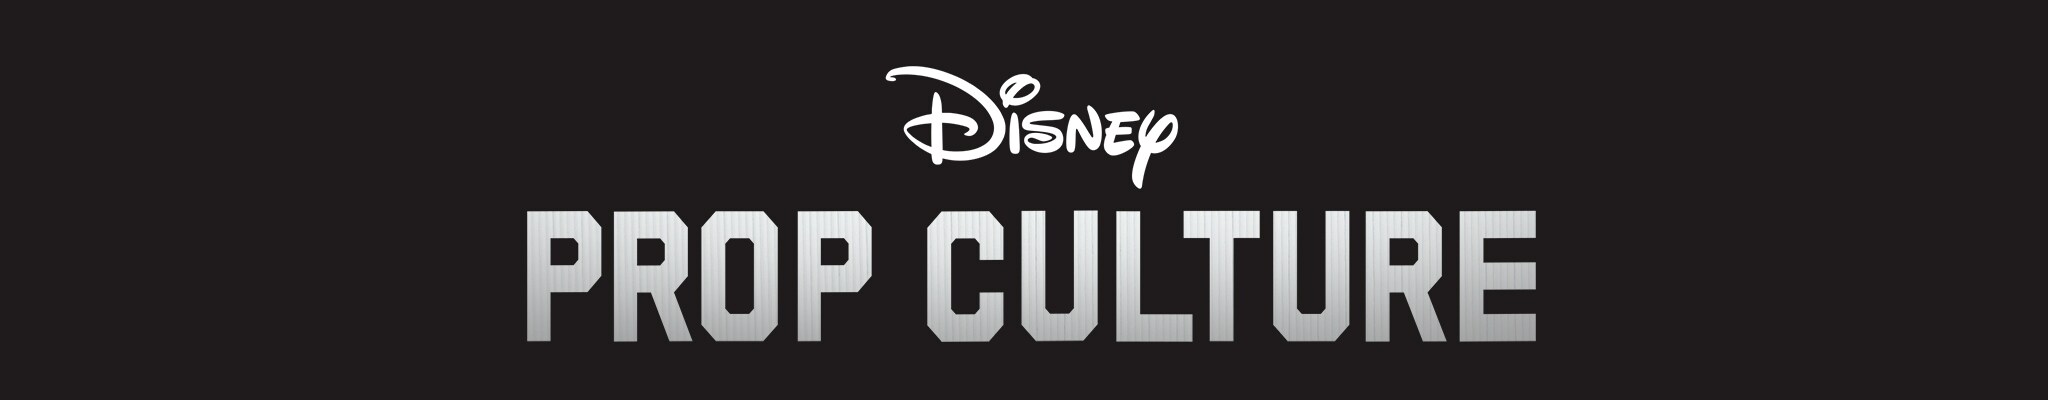 Disney Prop Culture